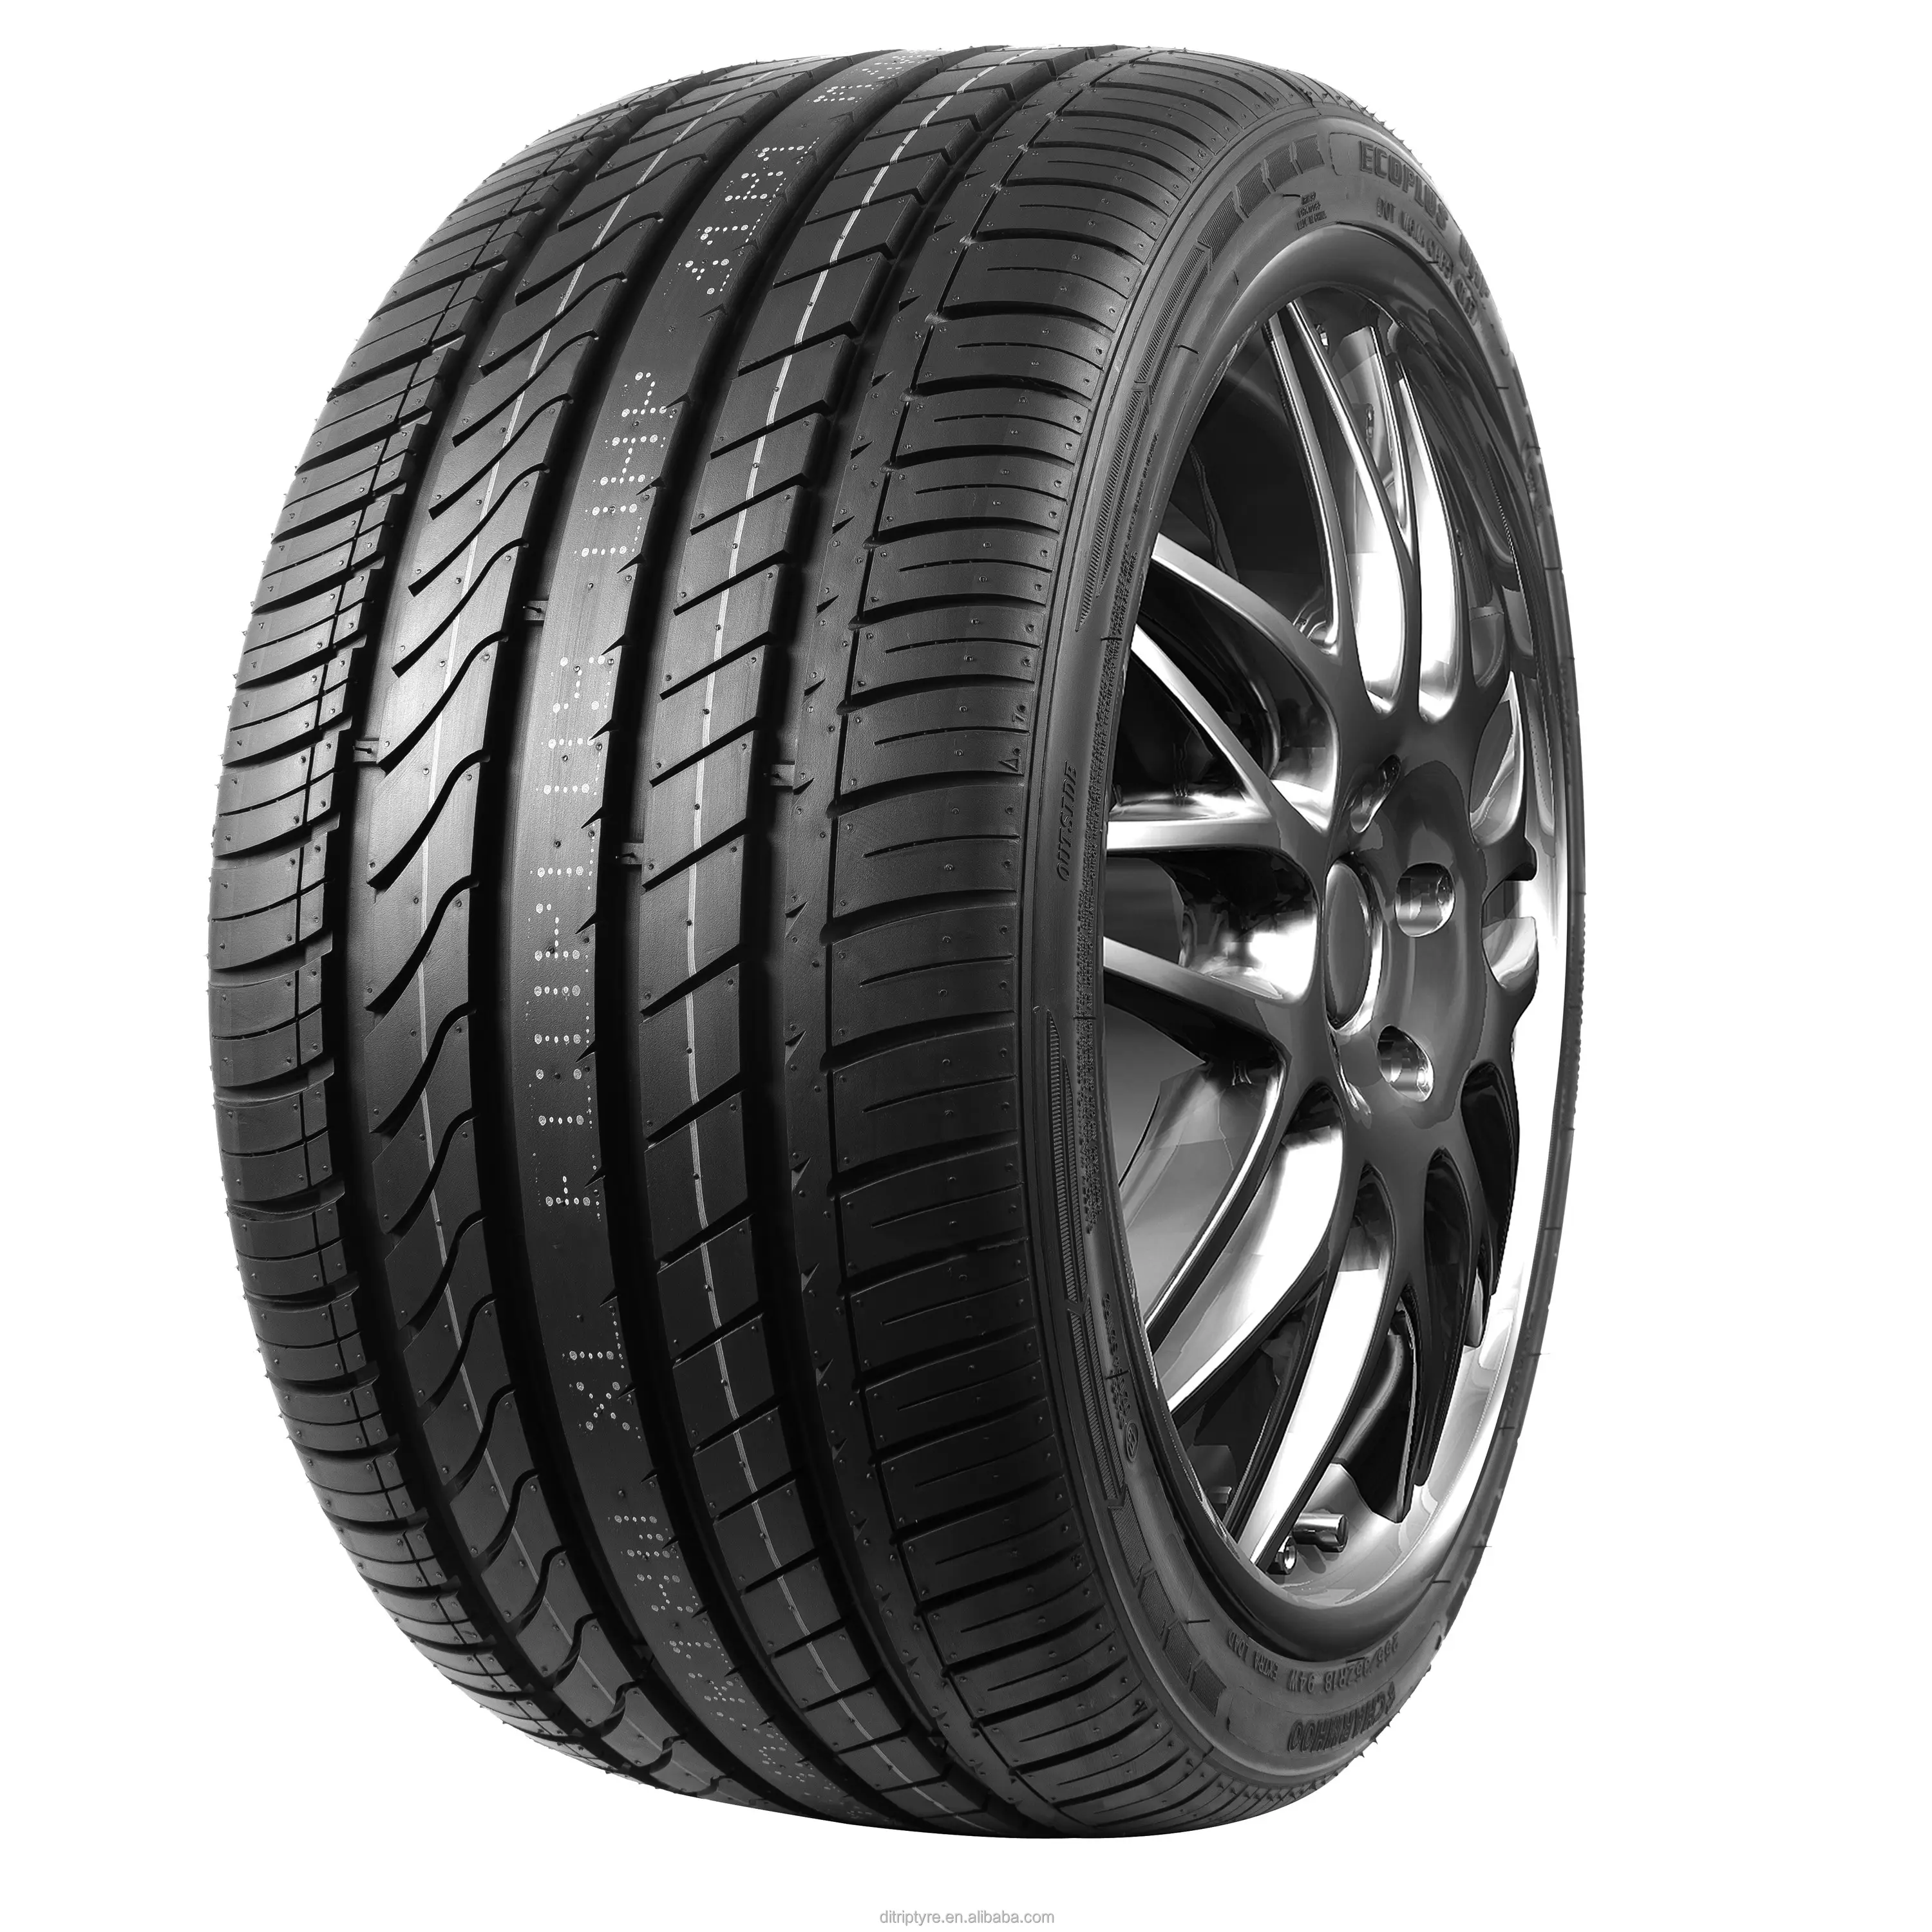 Charmhoo-neumáticos al por mayor, 235/55R19, descuento, precios de neumáticos